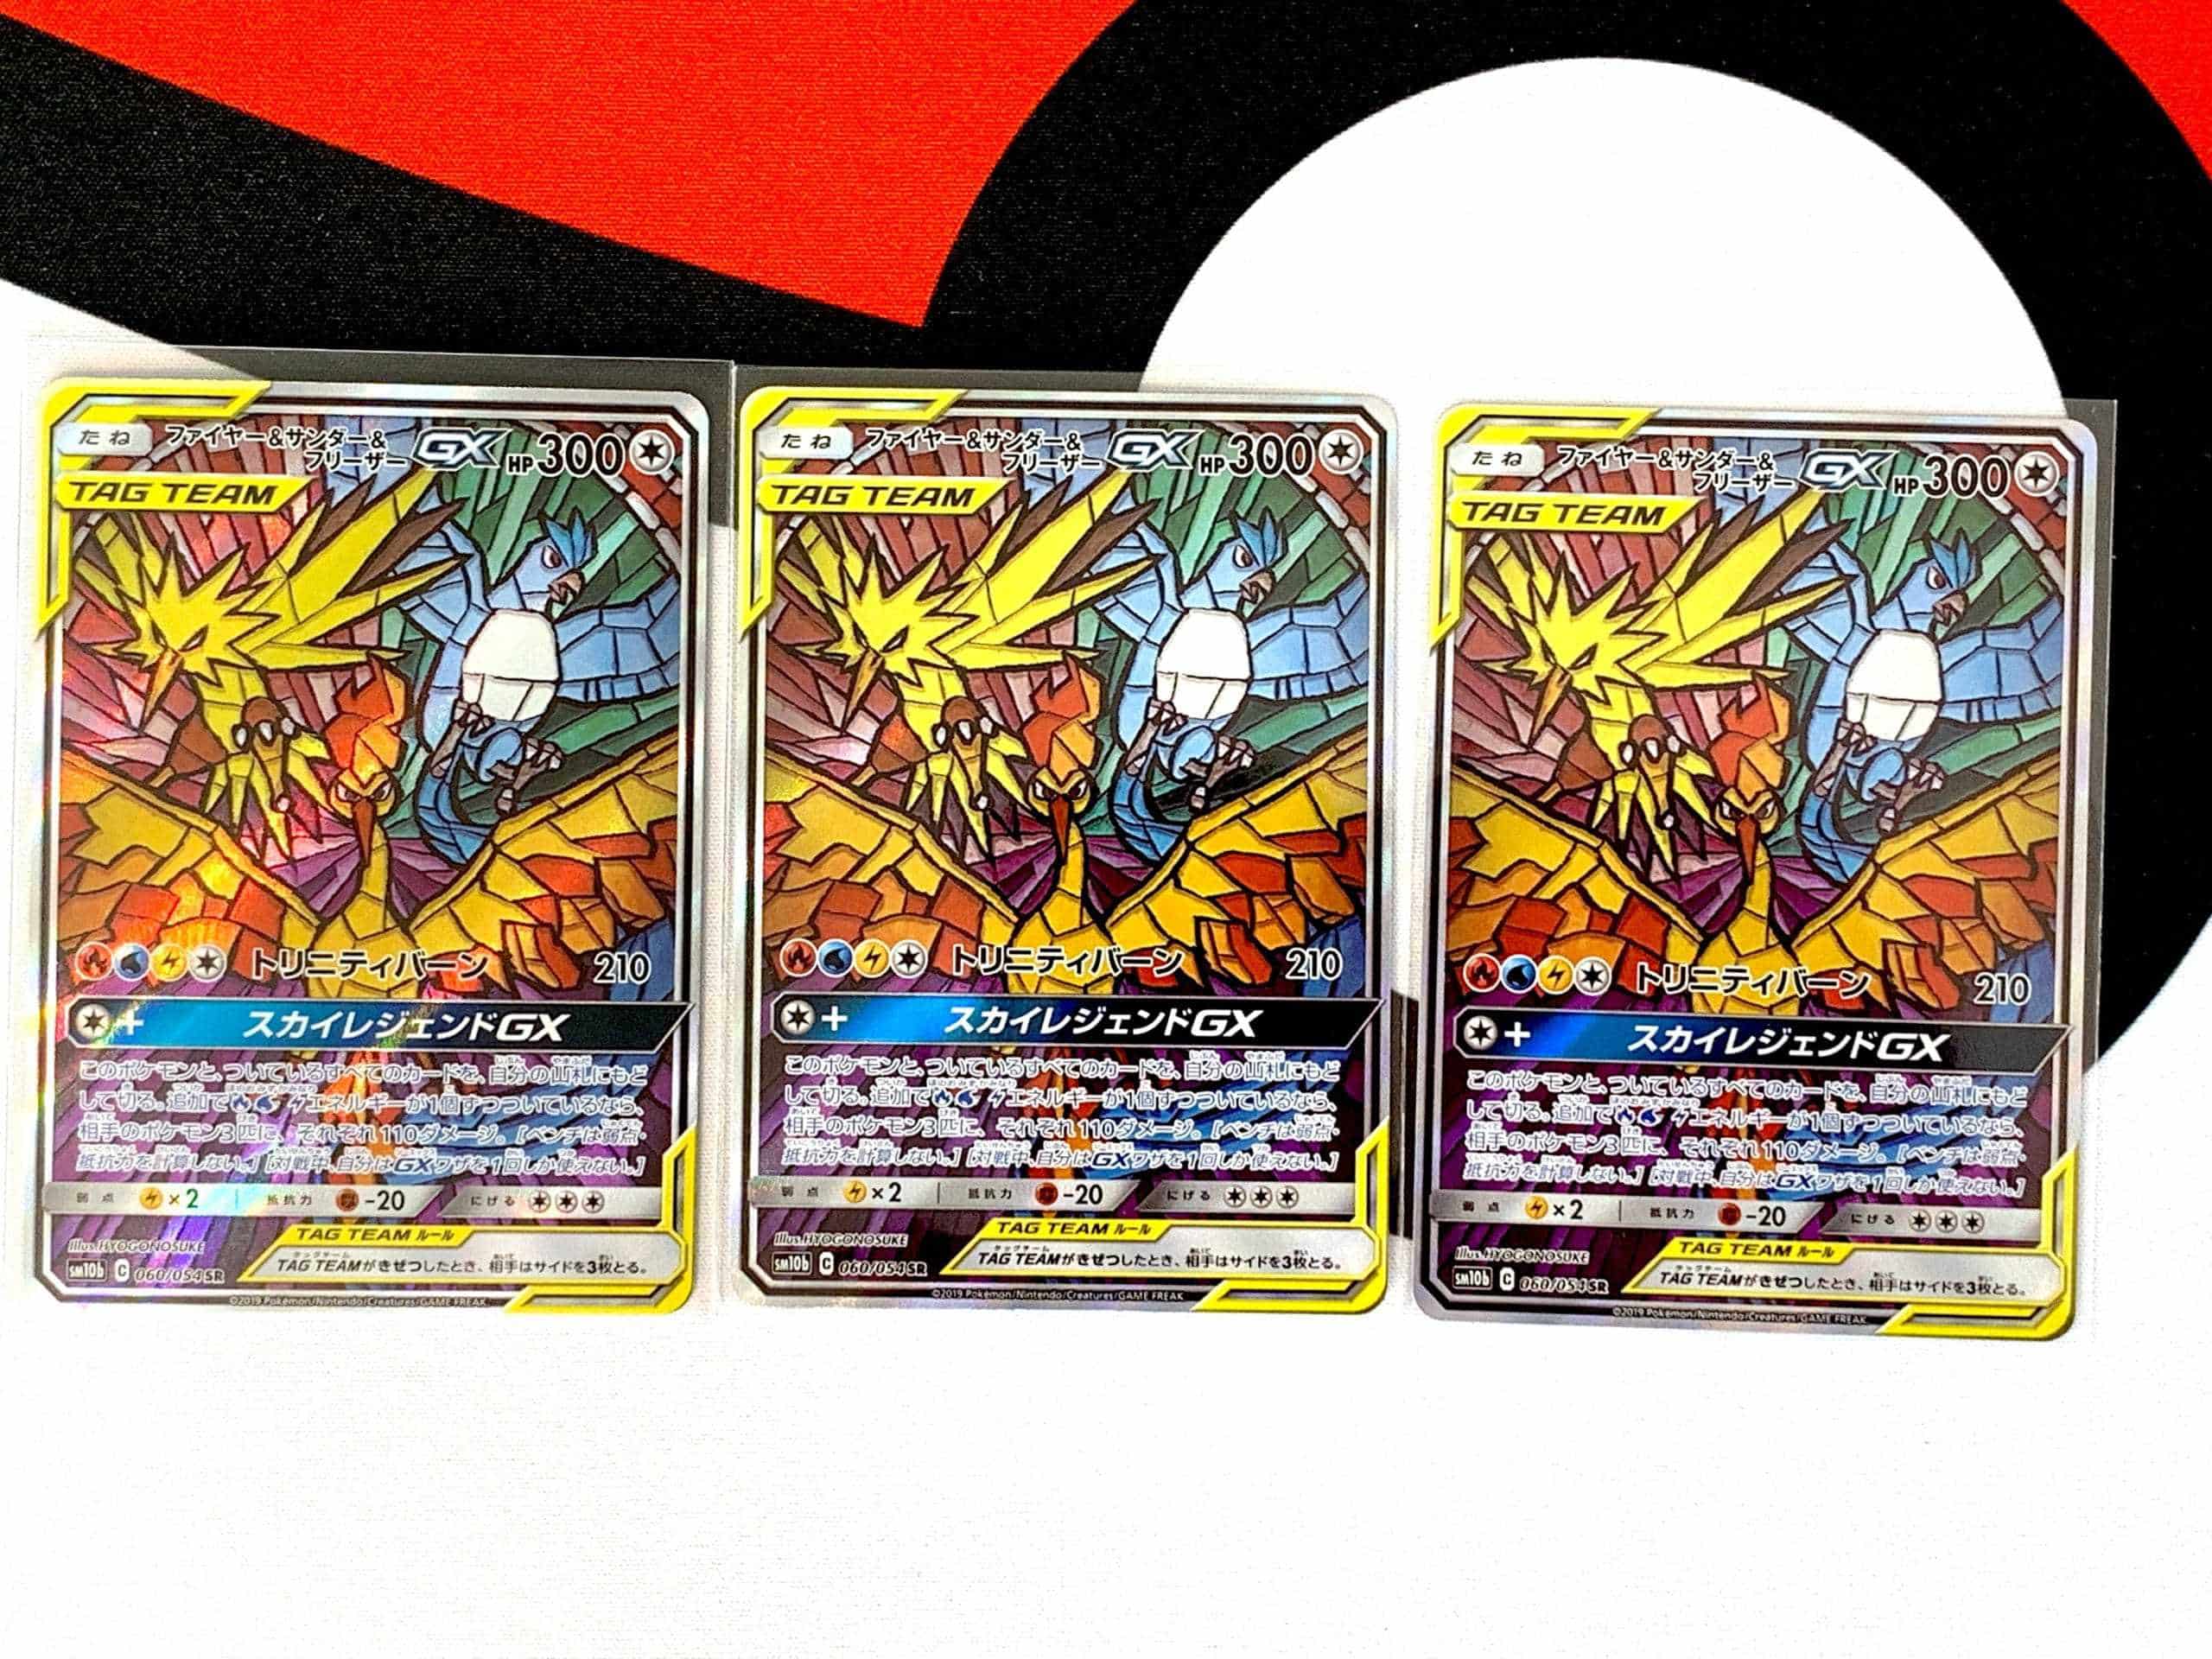 carta pokemon. moltres v. ps 7320. ultra rara. - Buy Antique trading cards  on todocoleccion